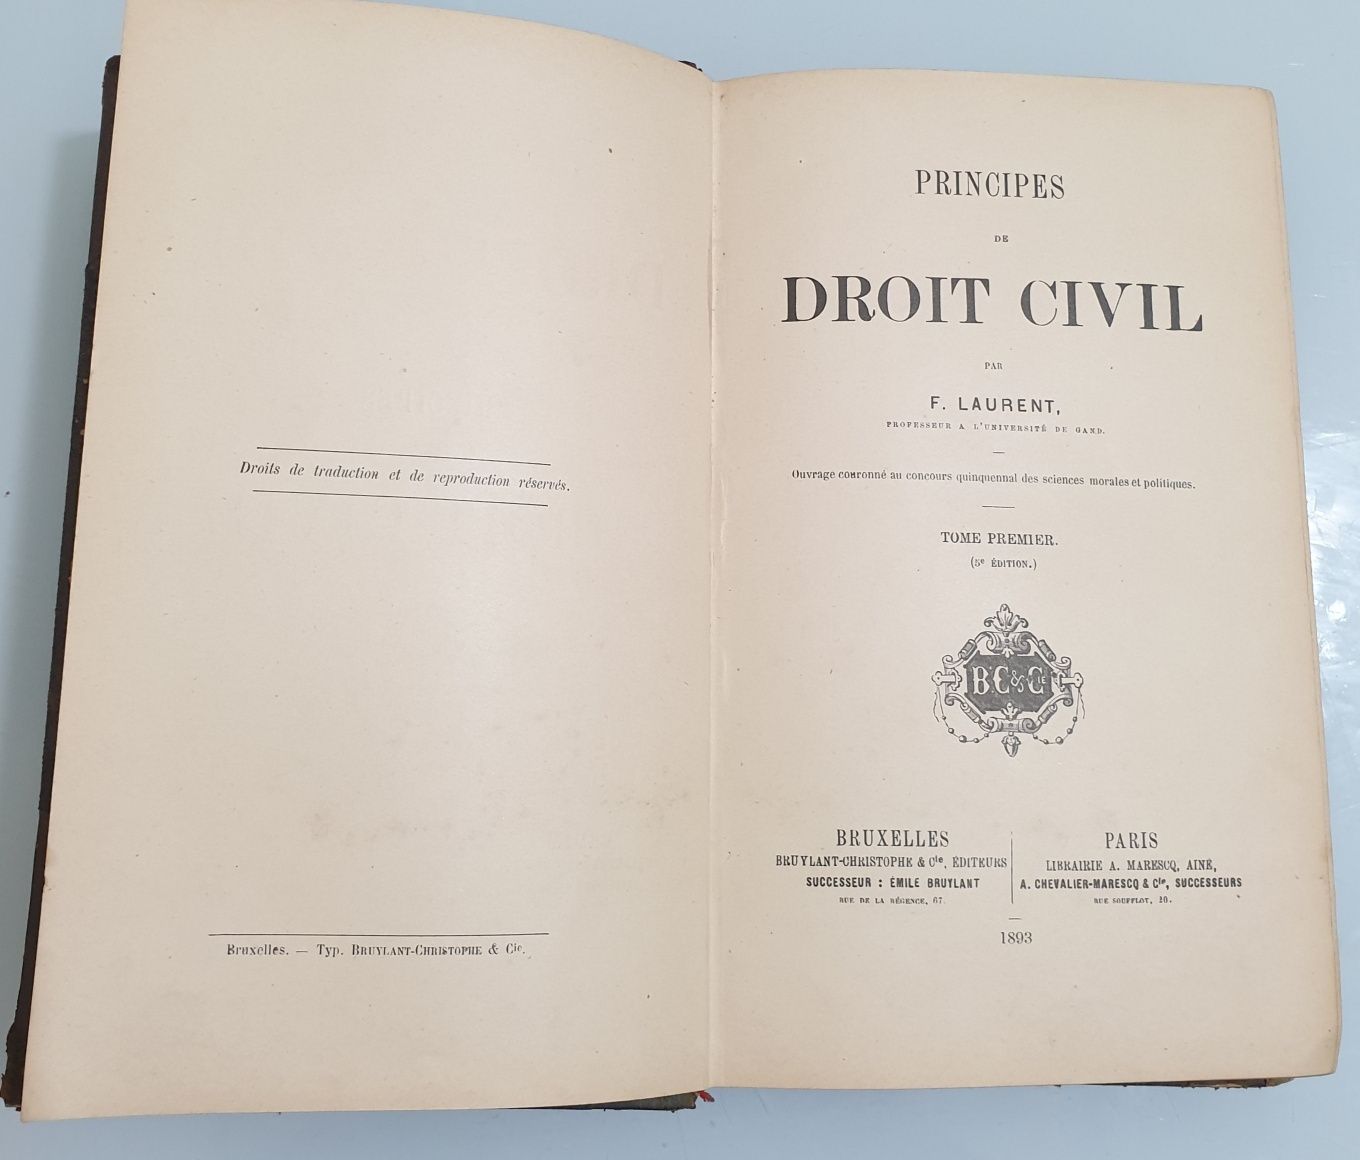 Pricipes de Droit Civil - F. Laurent 1893.Apartinut lui Ioan N. Roman